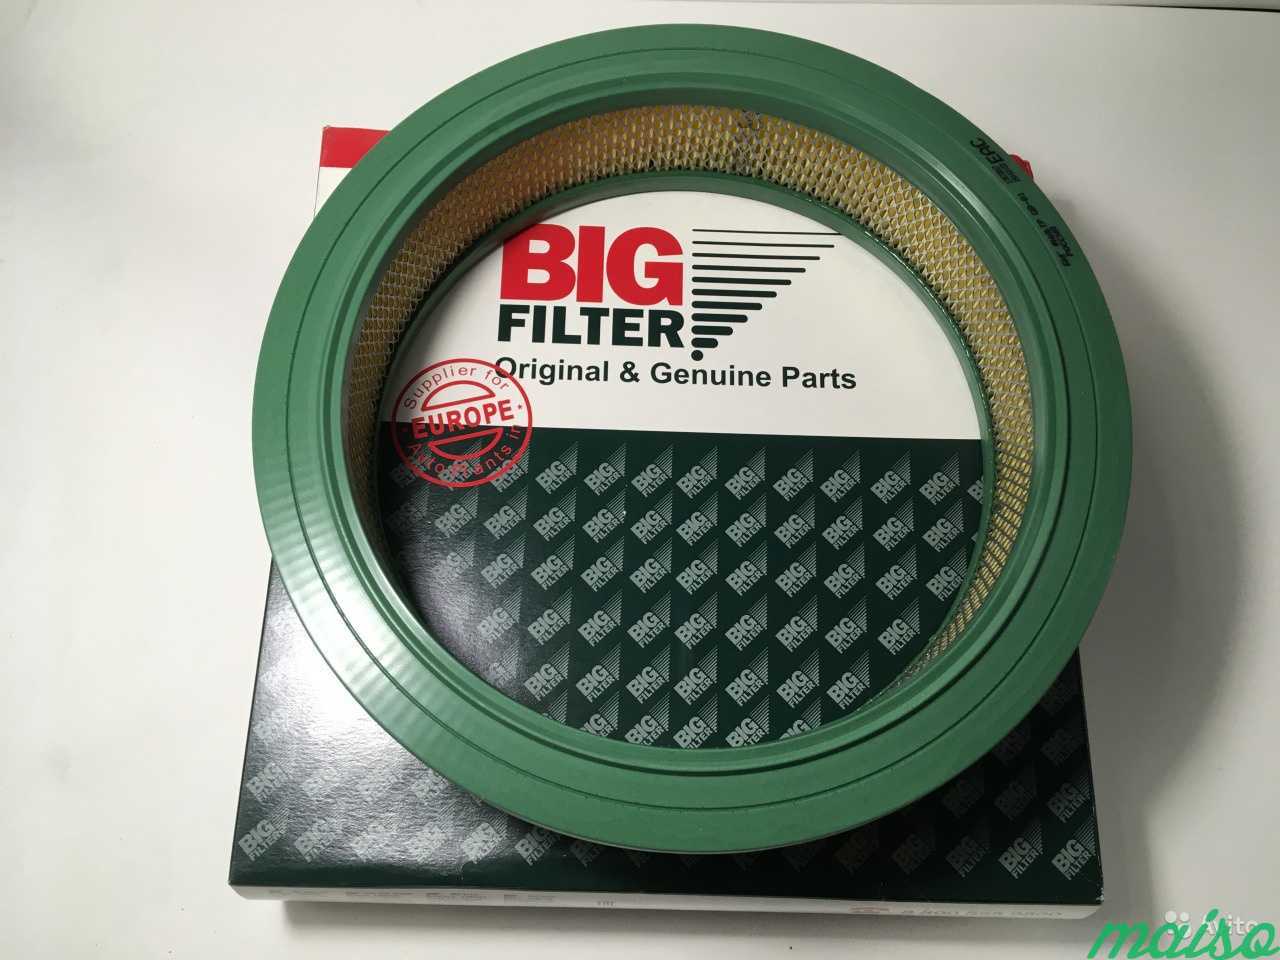 80 filter. Фильтр воздушный Ауди 80 круглый артикул. Воздушный фильтр Ауди 80. Фильтр воздушный Ауди 80 2,0 артикул. Пассат в3 фильтр воздушный.